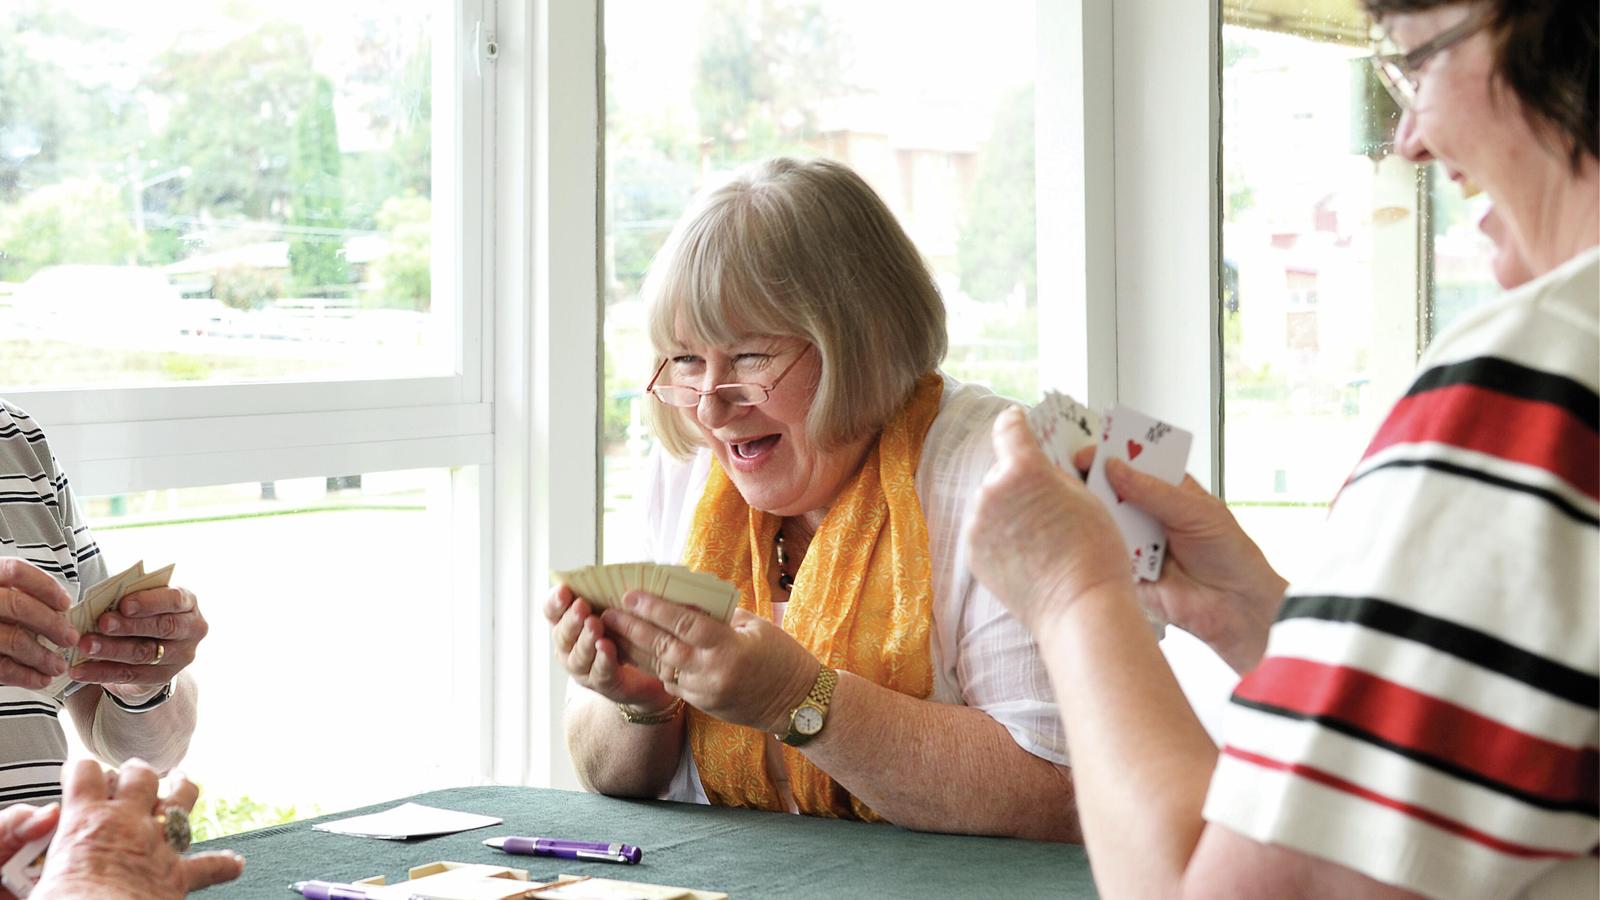 Donna, paciente con un sistema Cochlear, se ríe mientras juega a las cartas